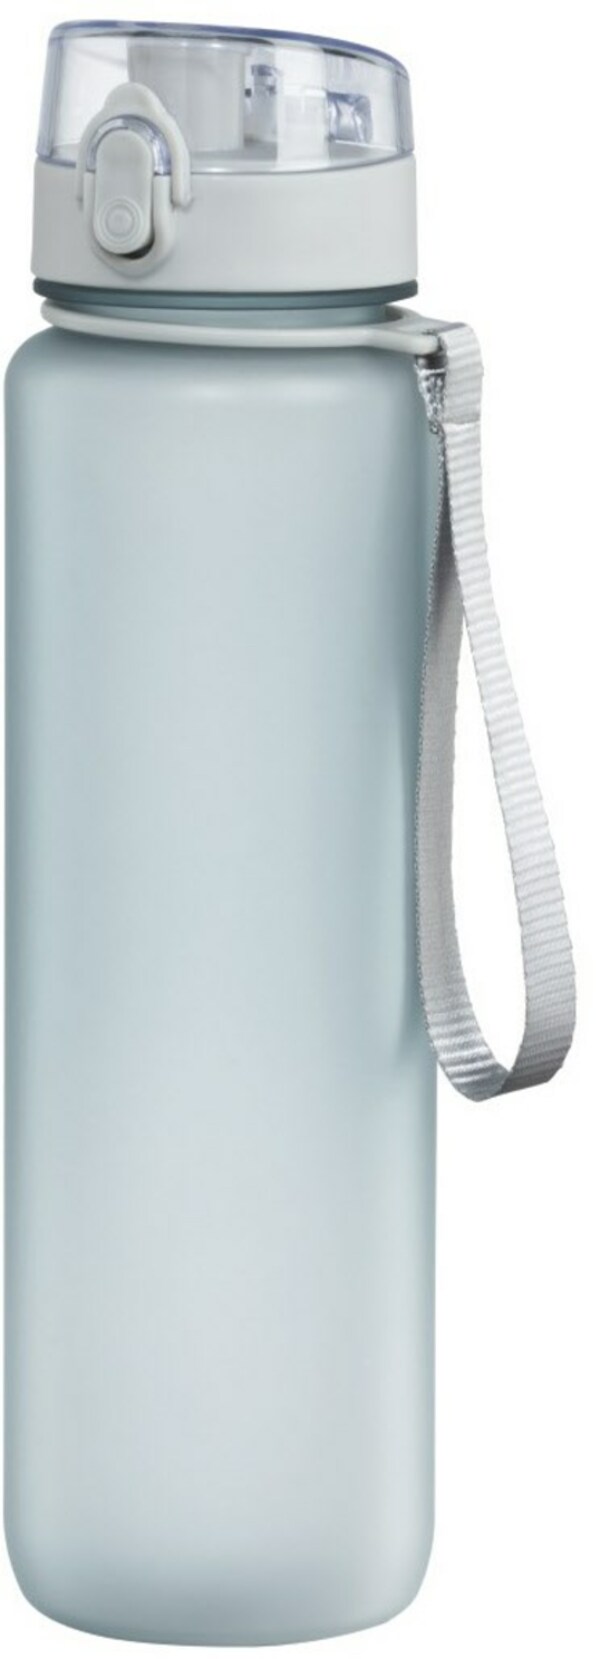 Bild 1 von Sport-Trinkflasche (1l) mit Trageschlaufe Transparent/Blau